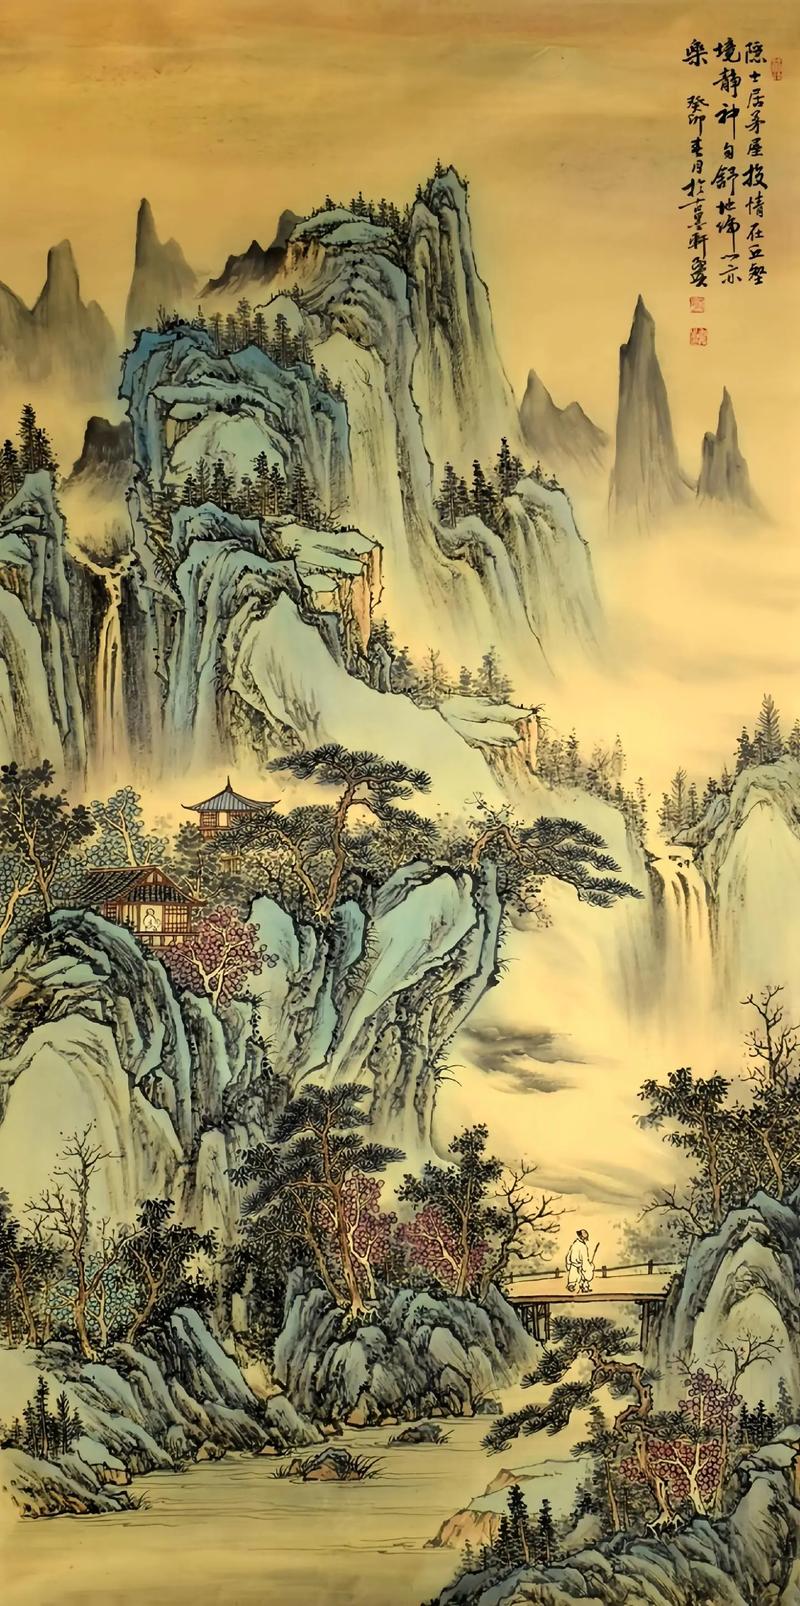 在中国文化中,山水画不仅是艺术的展现,也富含深厚的